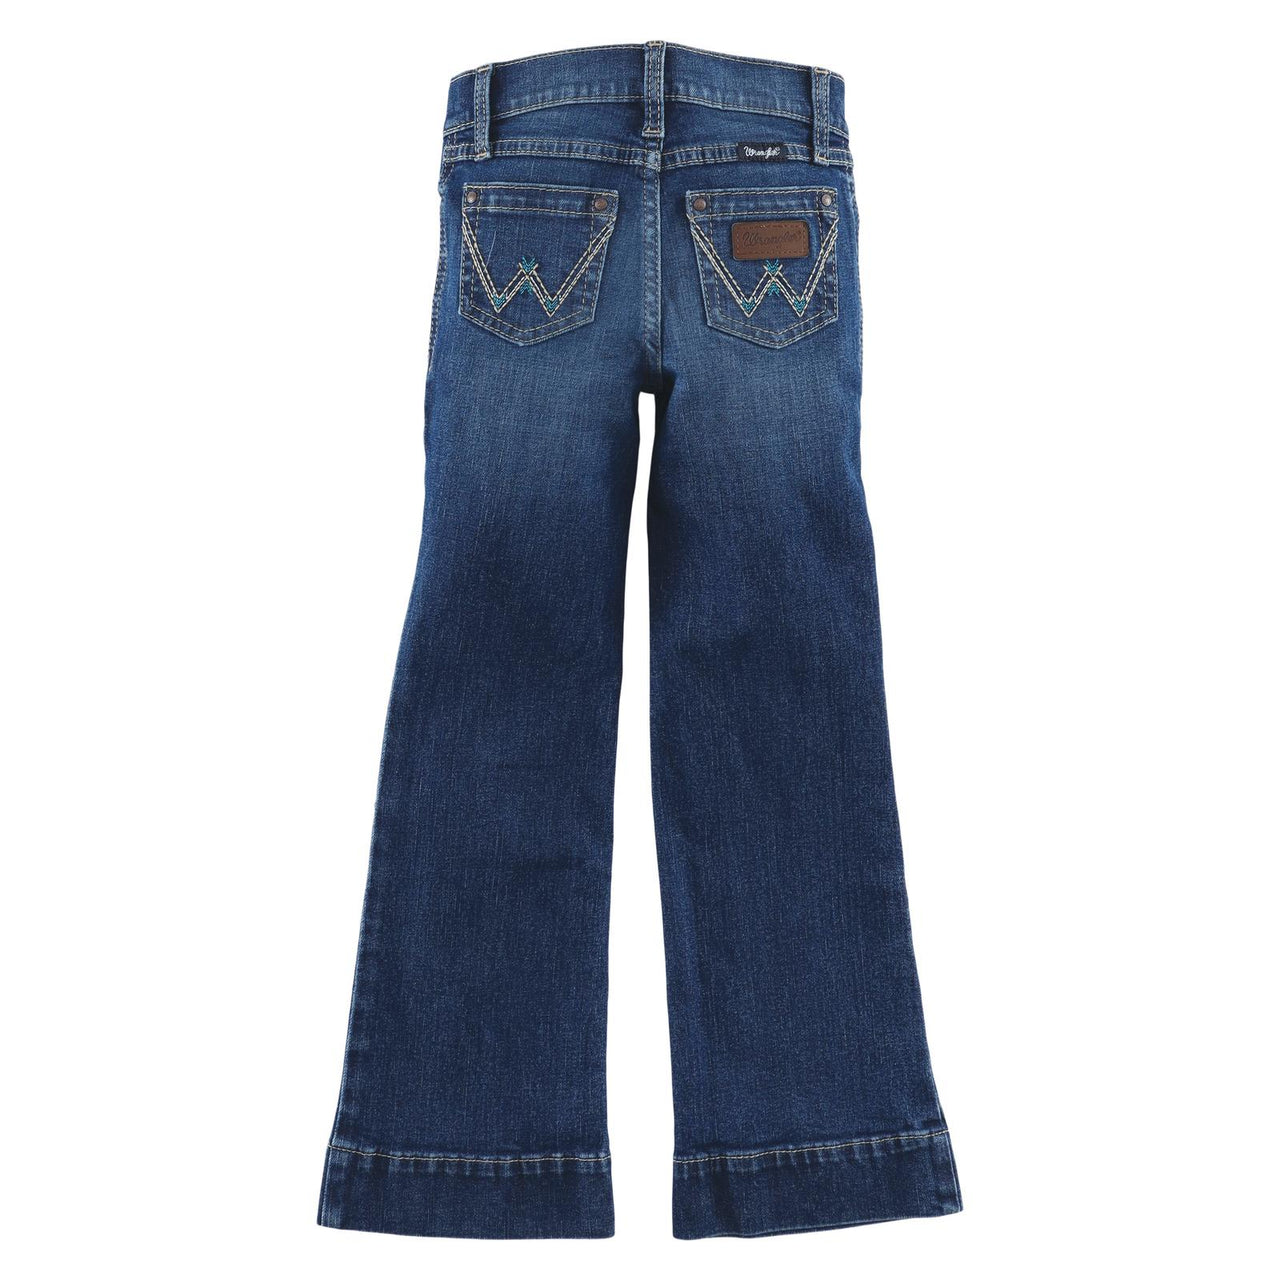 Wrangler Girl's Retro Trouser Jeans - Whitley